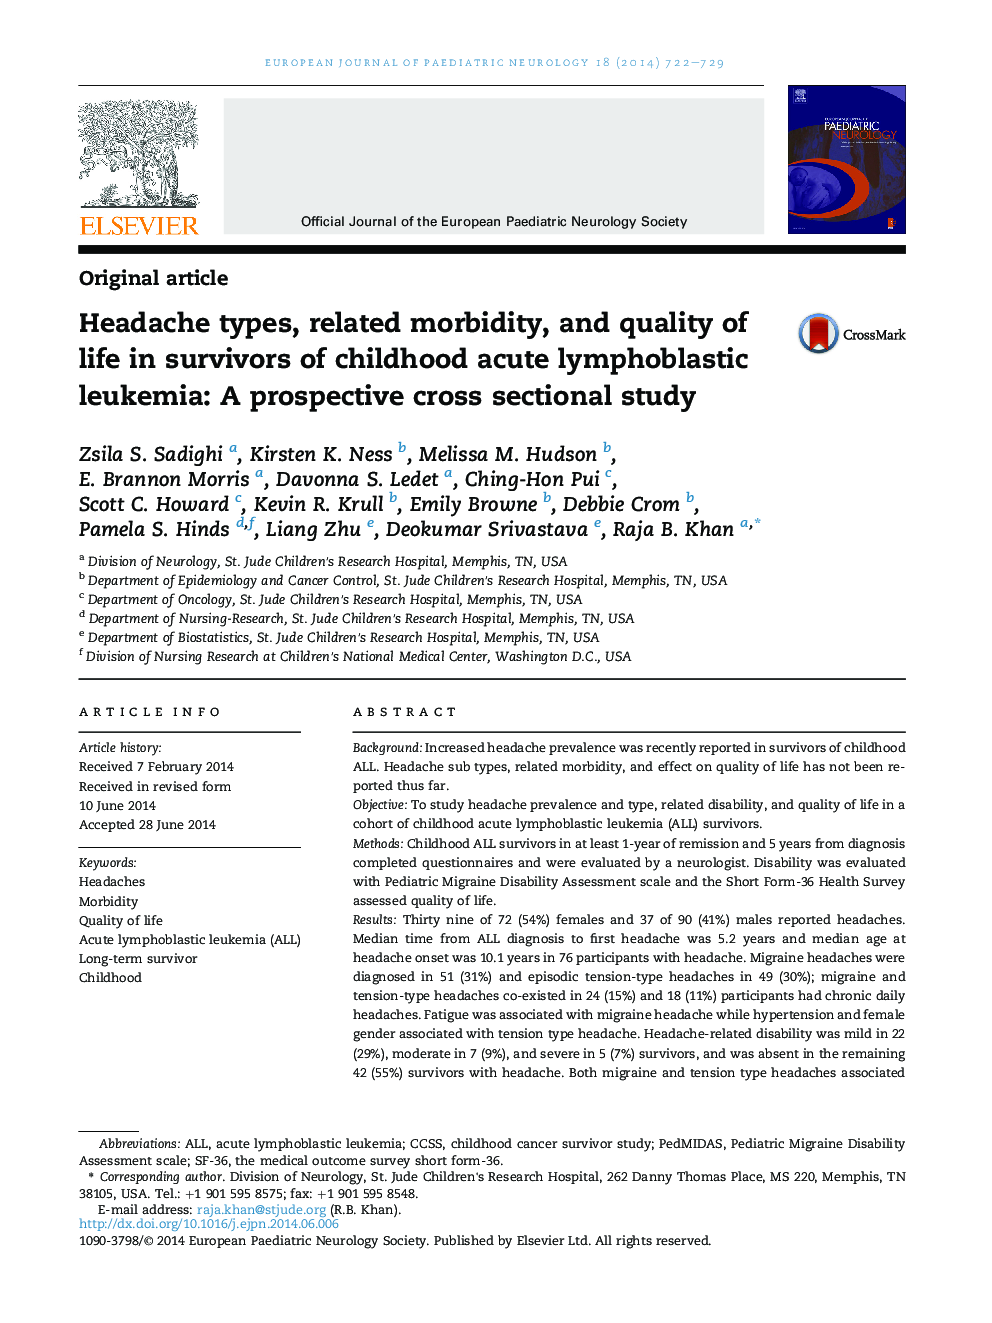 انواع سر درد، بیماری های مرتبط و کیفیت زندگی در بازماندگان لوسمی لنفوبلاستی حاد دوران کودکی: یک مطالعه مقطعی آینده نگر 